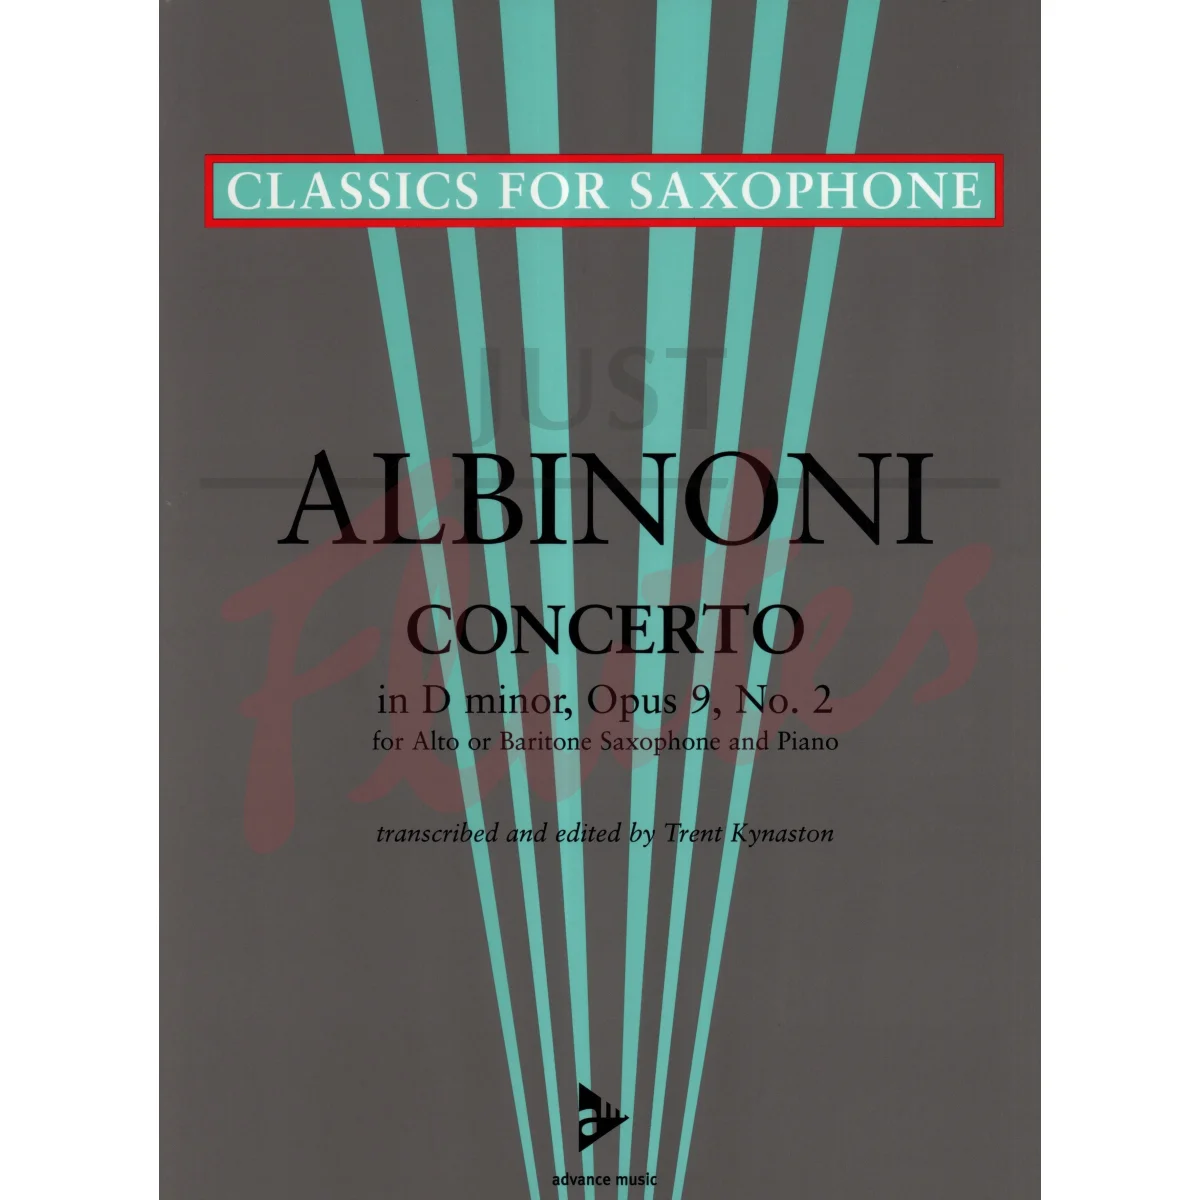 Concerto in D minor for Alto/Baritone Saxophone and Piano